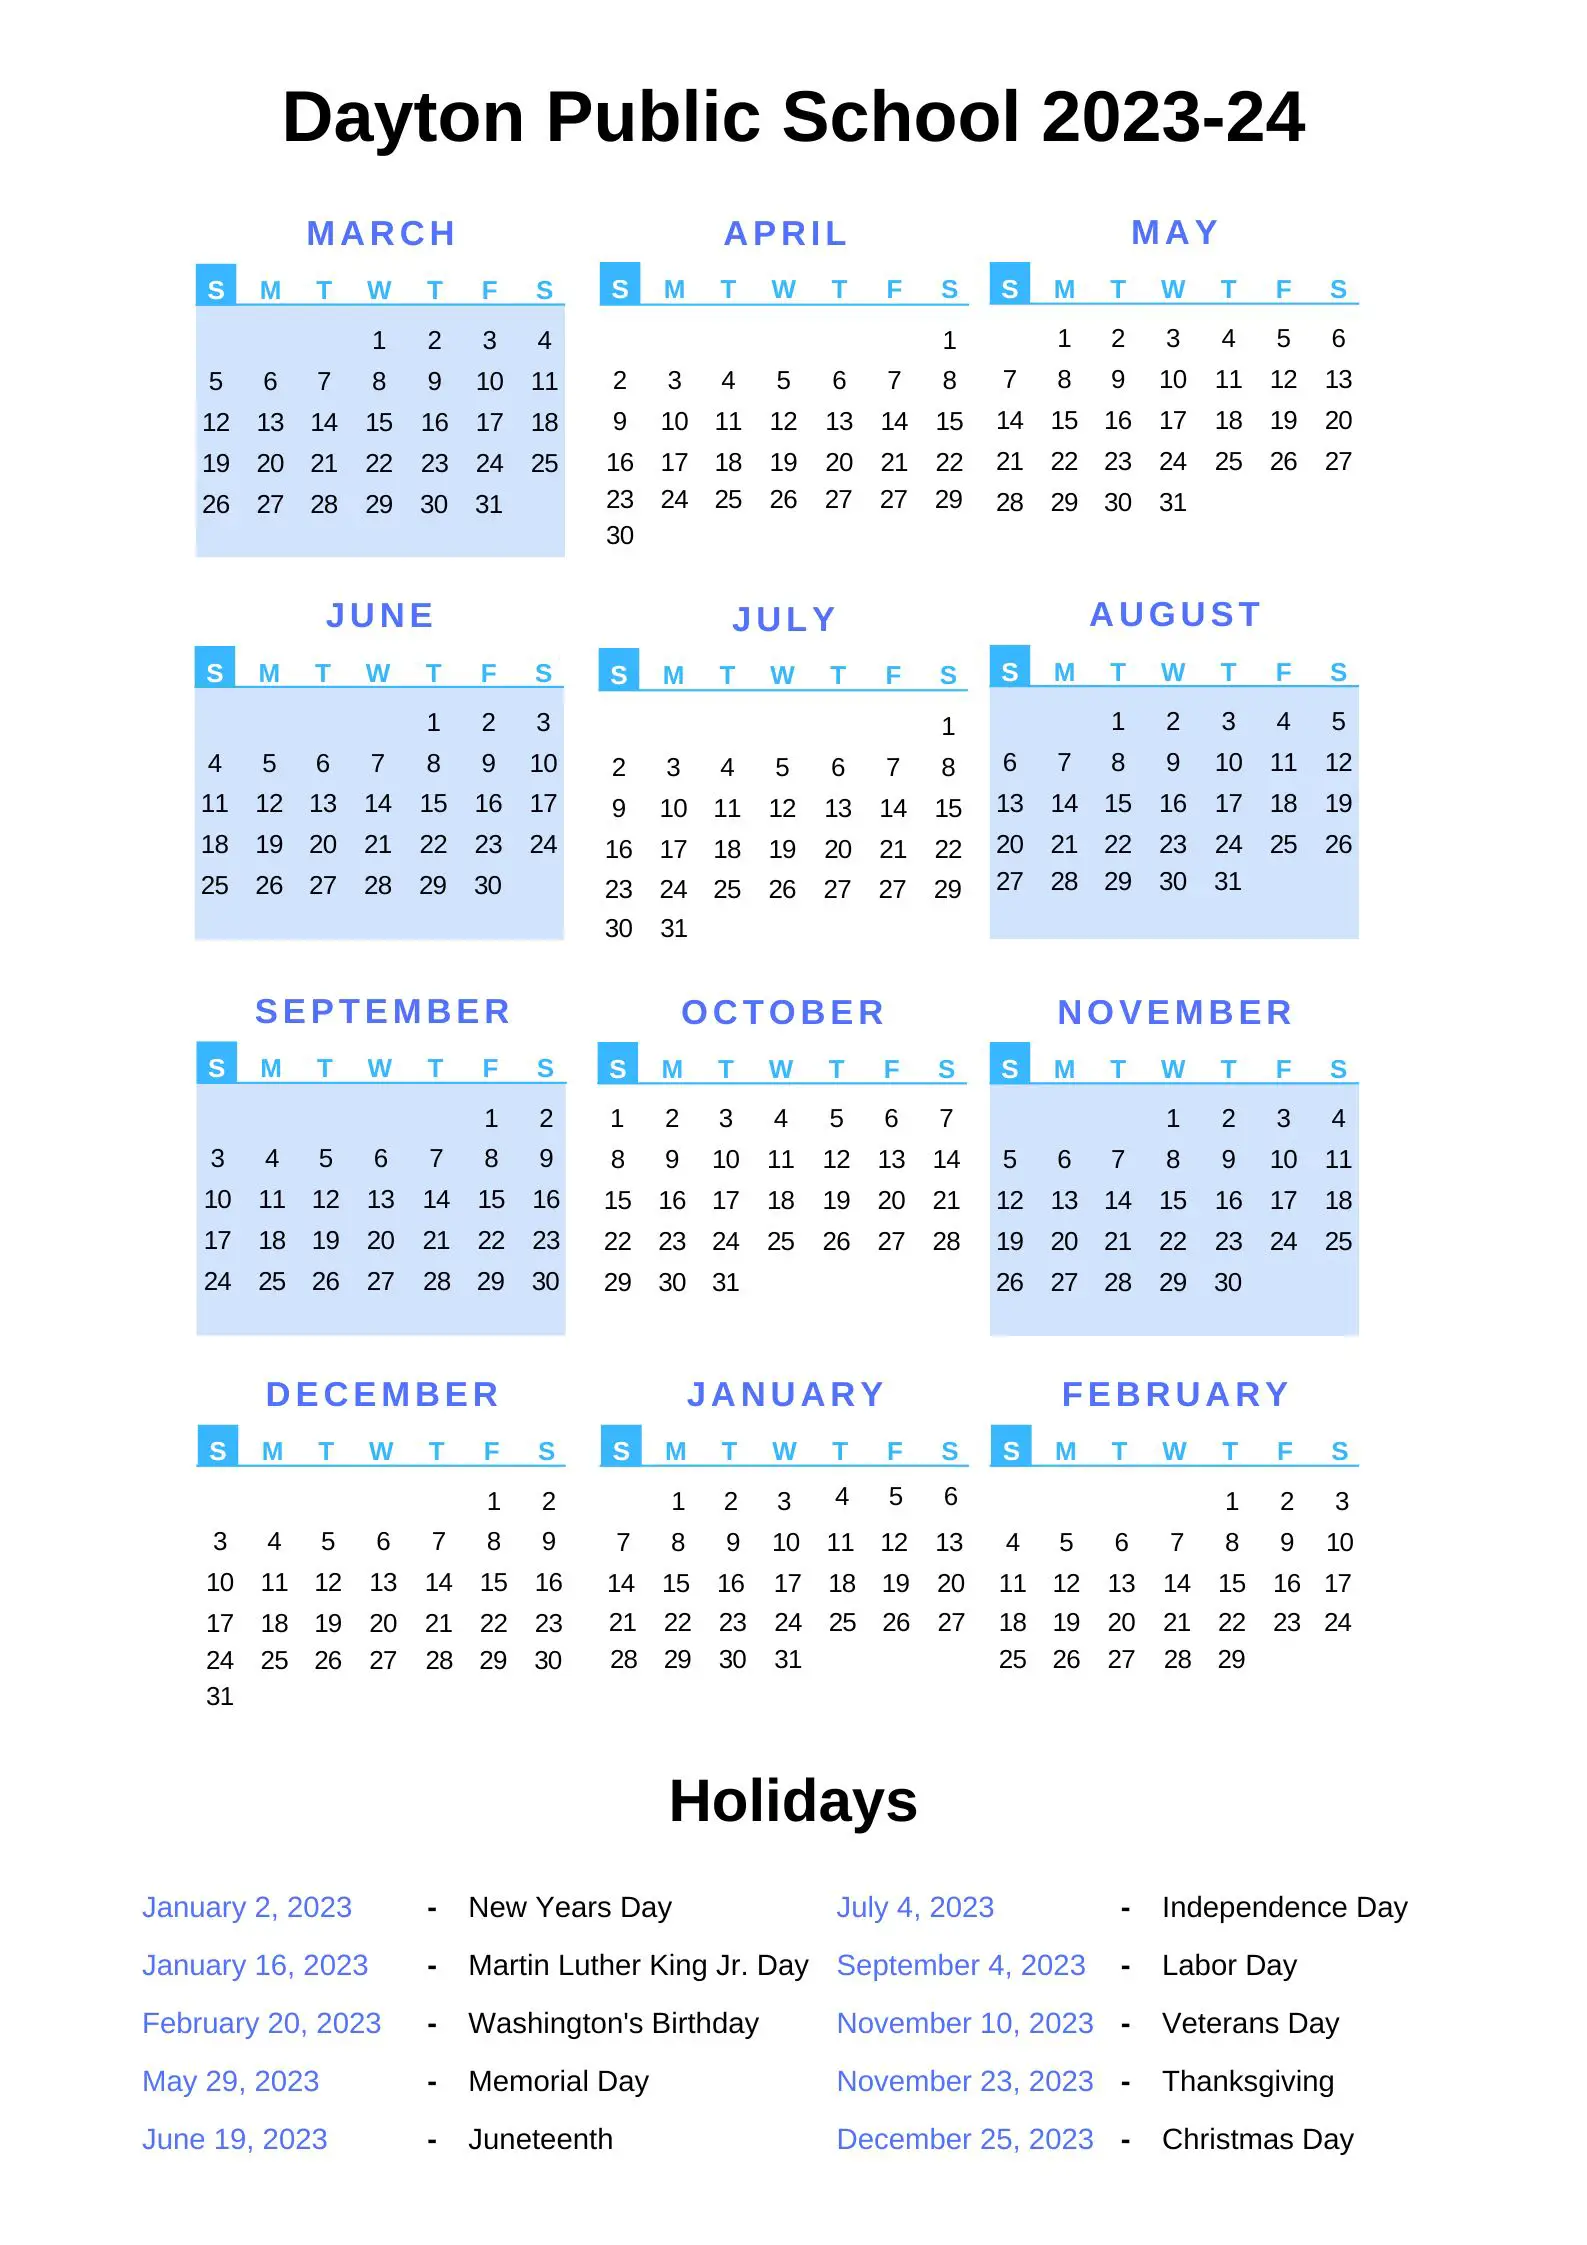 Dayton Public Schools Calendar 2023 24 with Holidays